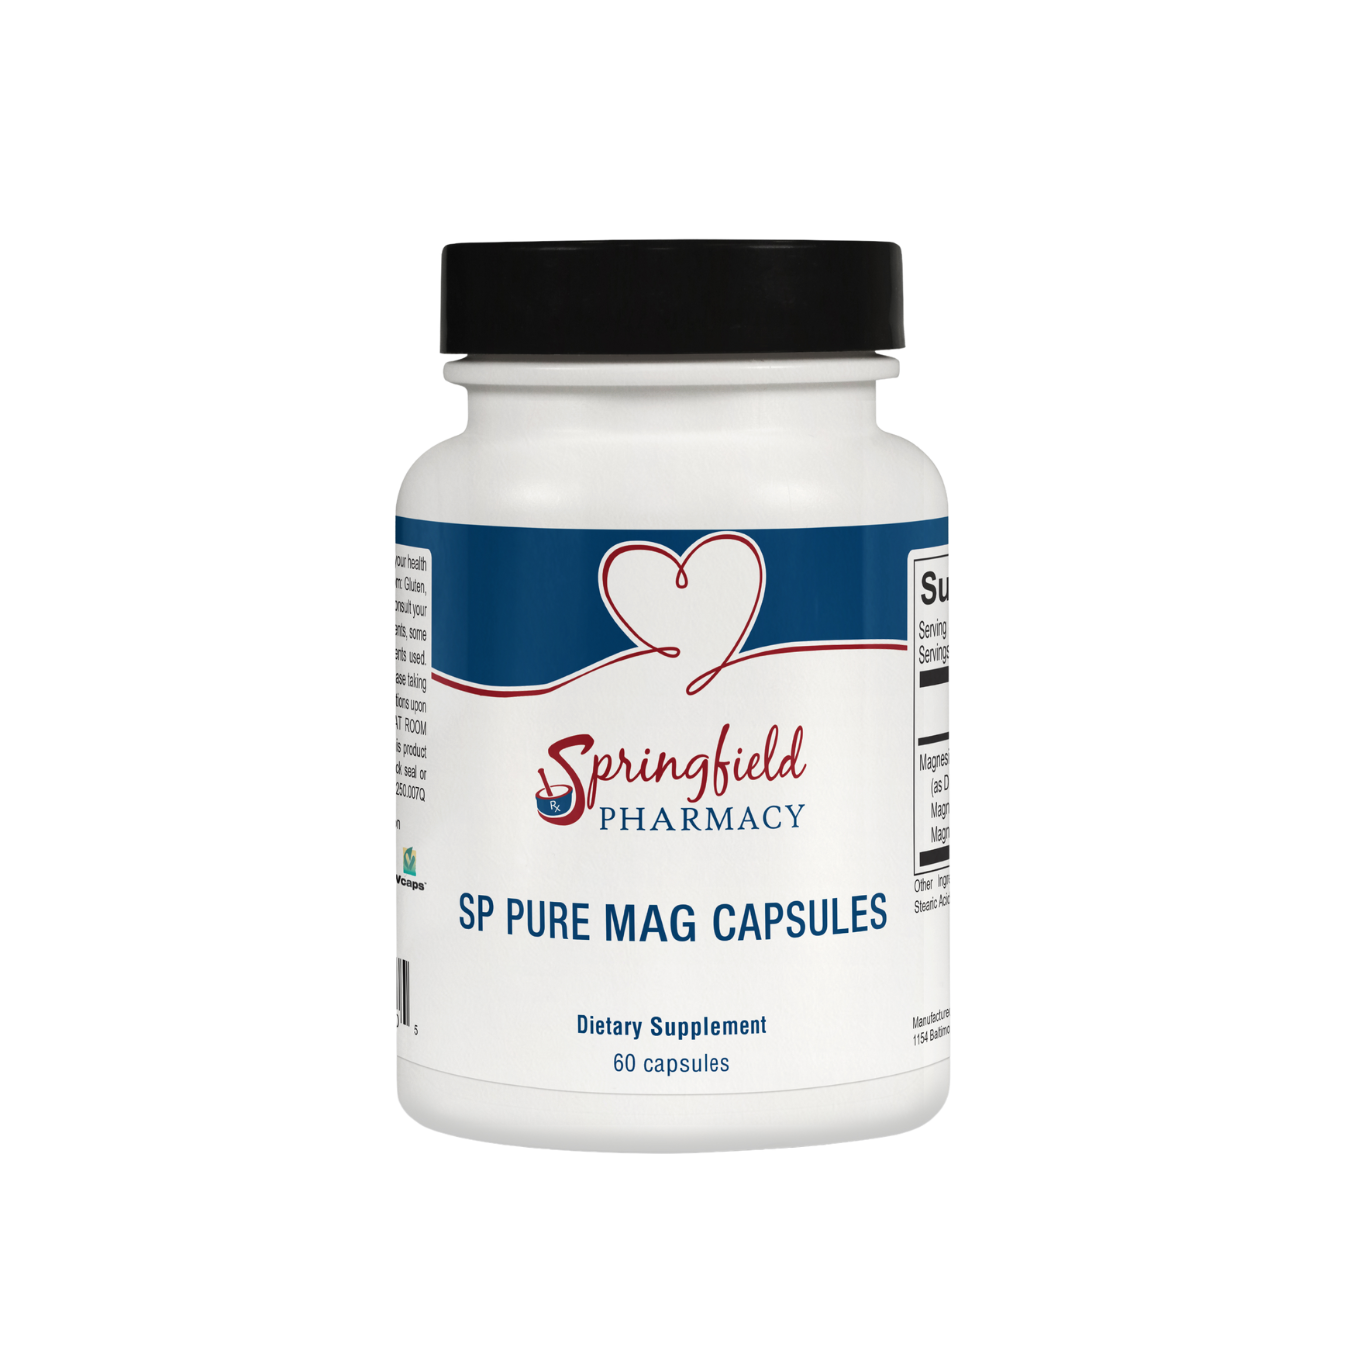 SP Pure Mag Capsules